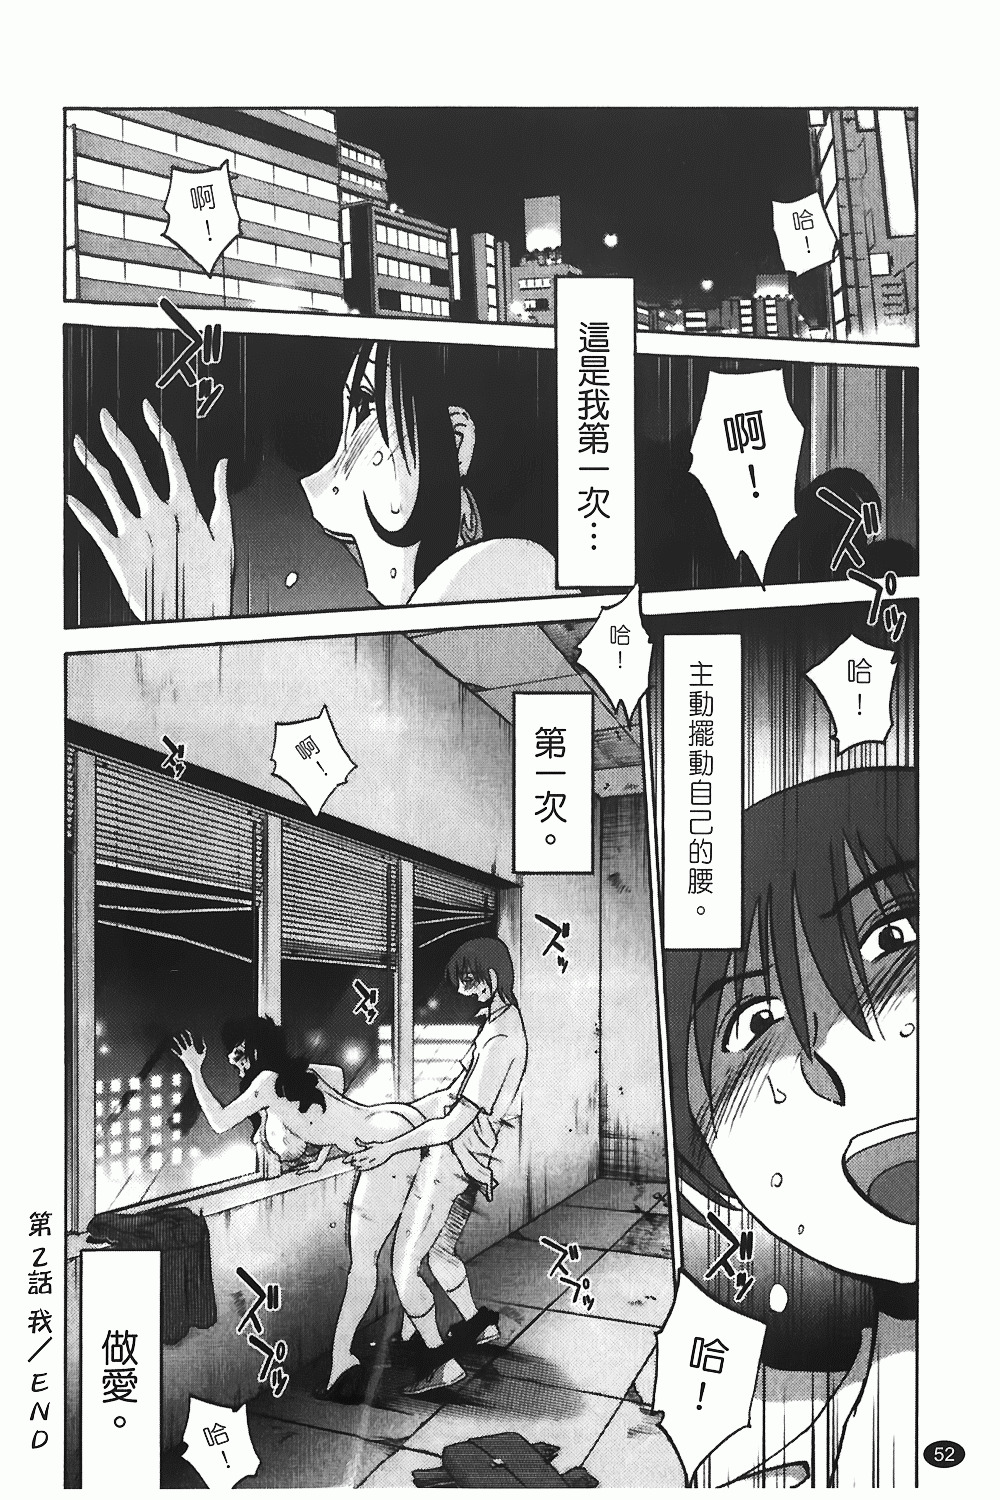 [TsuyaTsuya] Monokage no Iris 1 | 陰影中的伊利斯 1 [Chinese] page 49 full